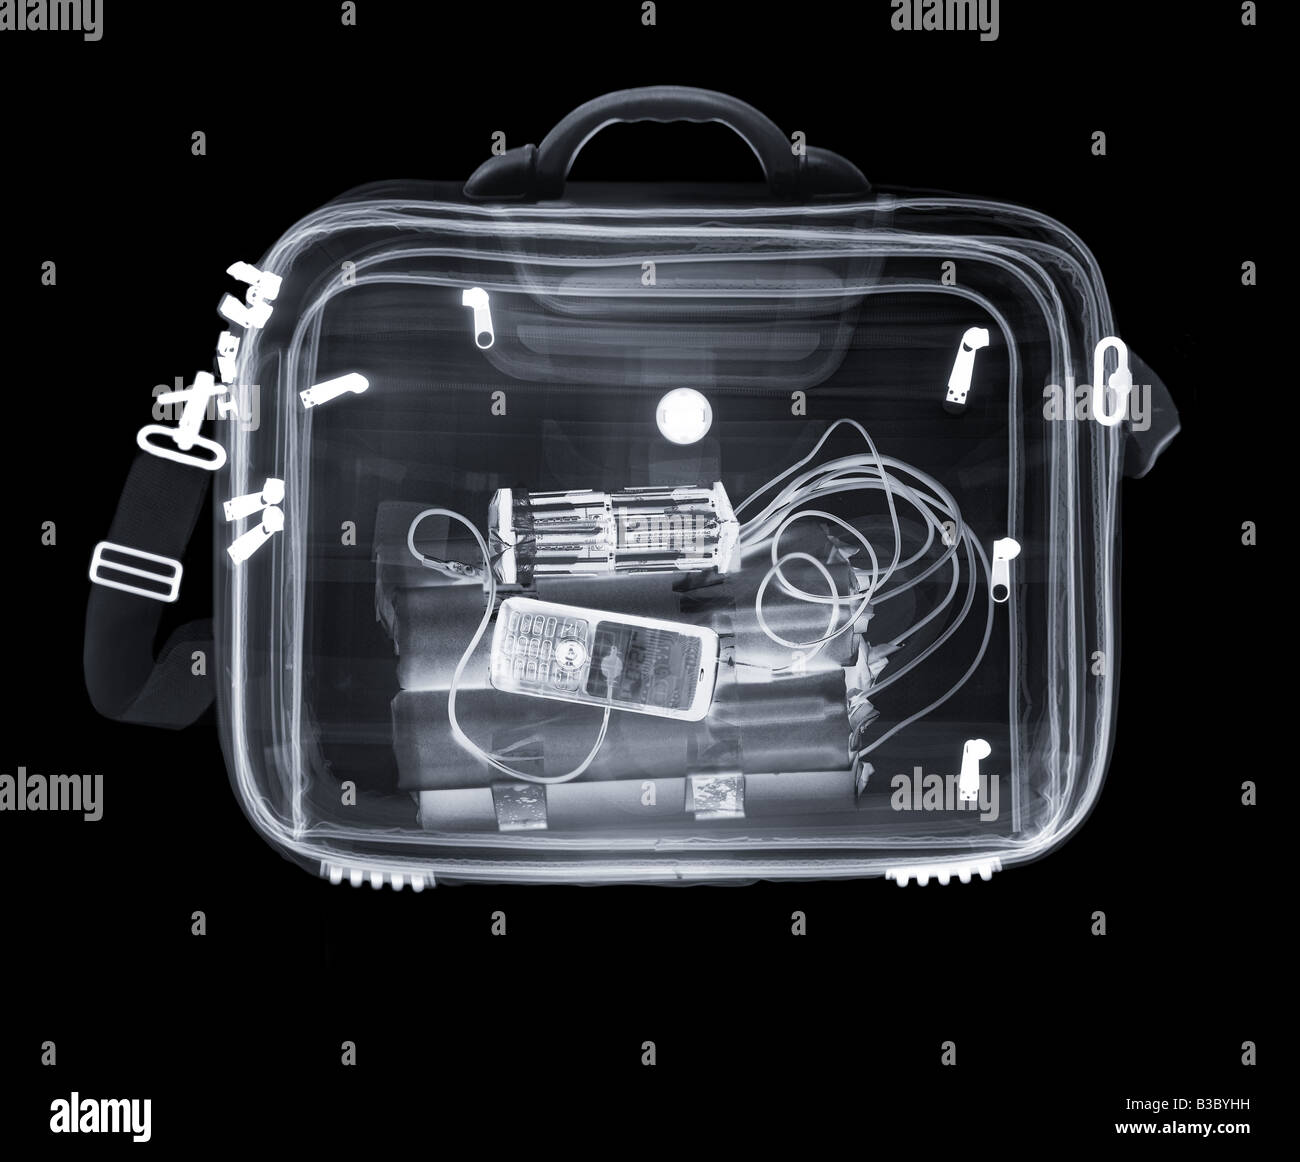 Radiografía de una bolsa que contiene una bomba Foto de stock